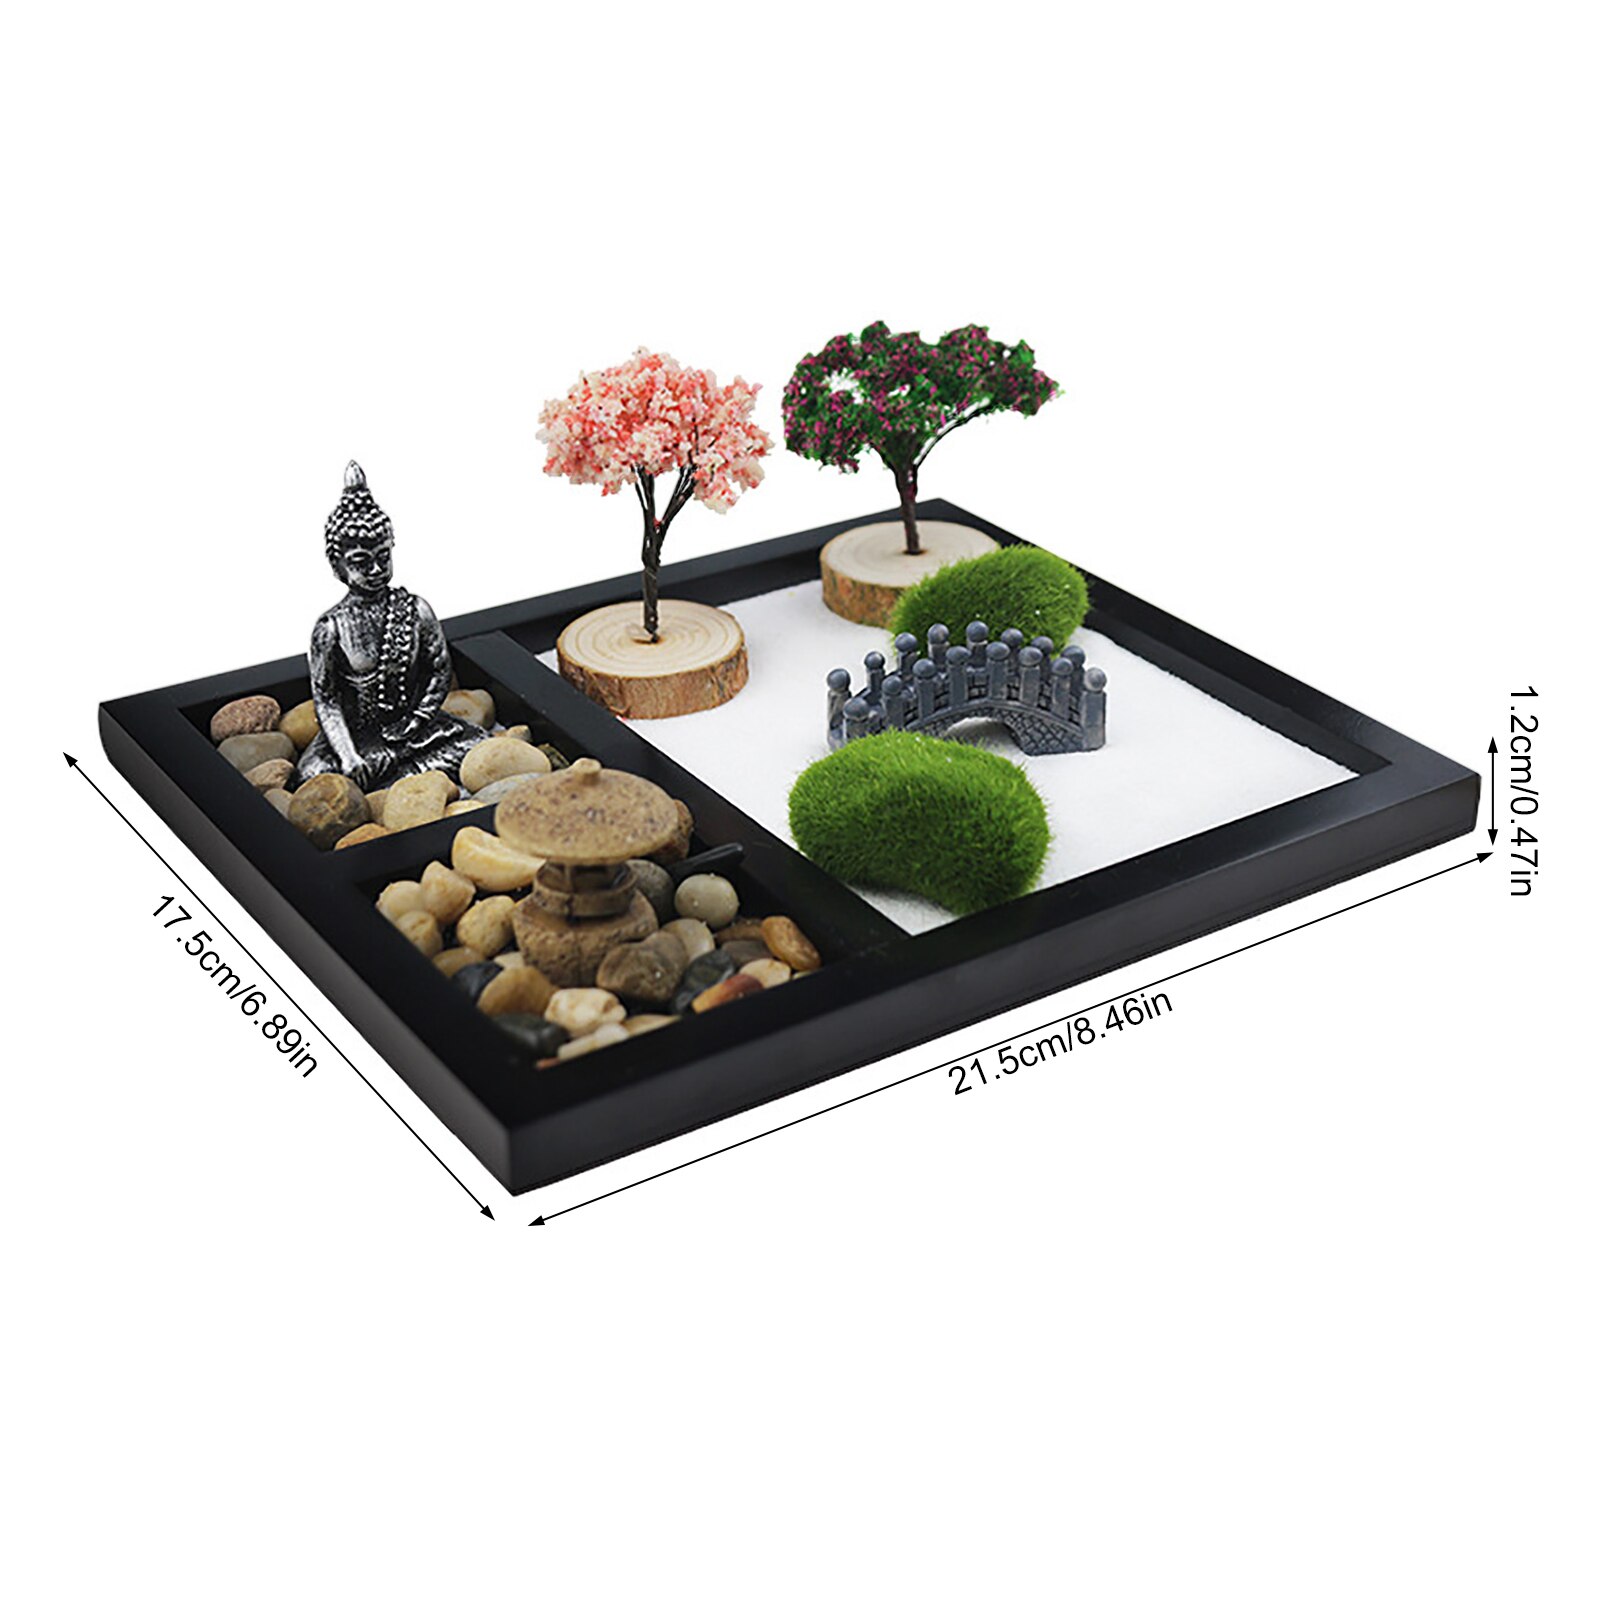 Japanese Zen Sand Garden Tabletop Mini Zen Garden Kit For Home Office Tabletop Decor For Concentration Relaxation Meditation 6